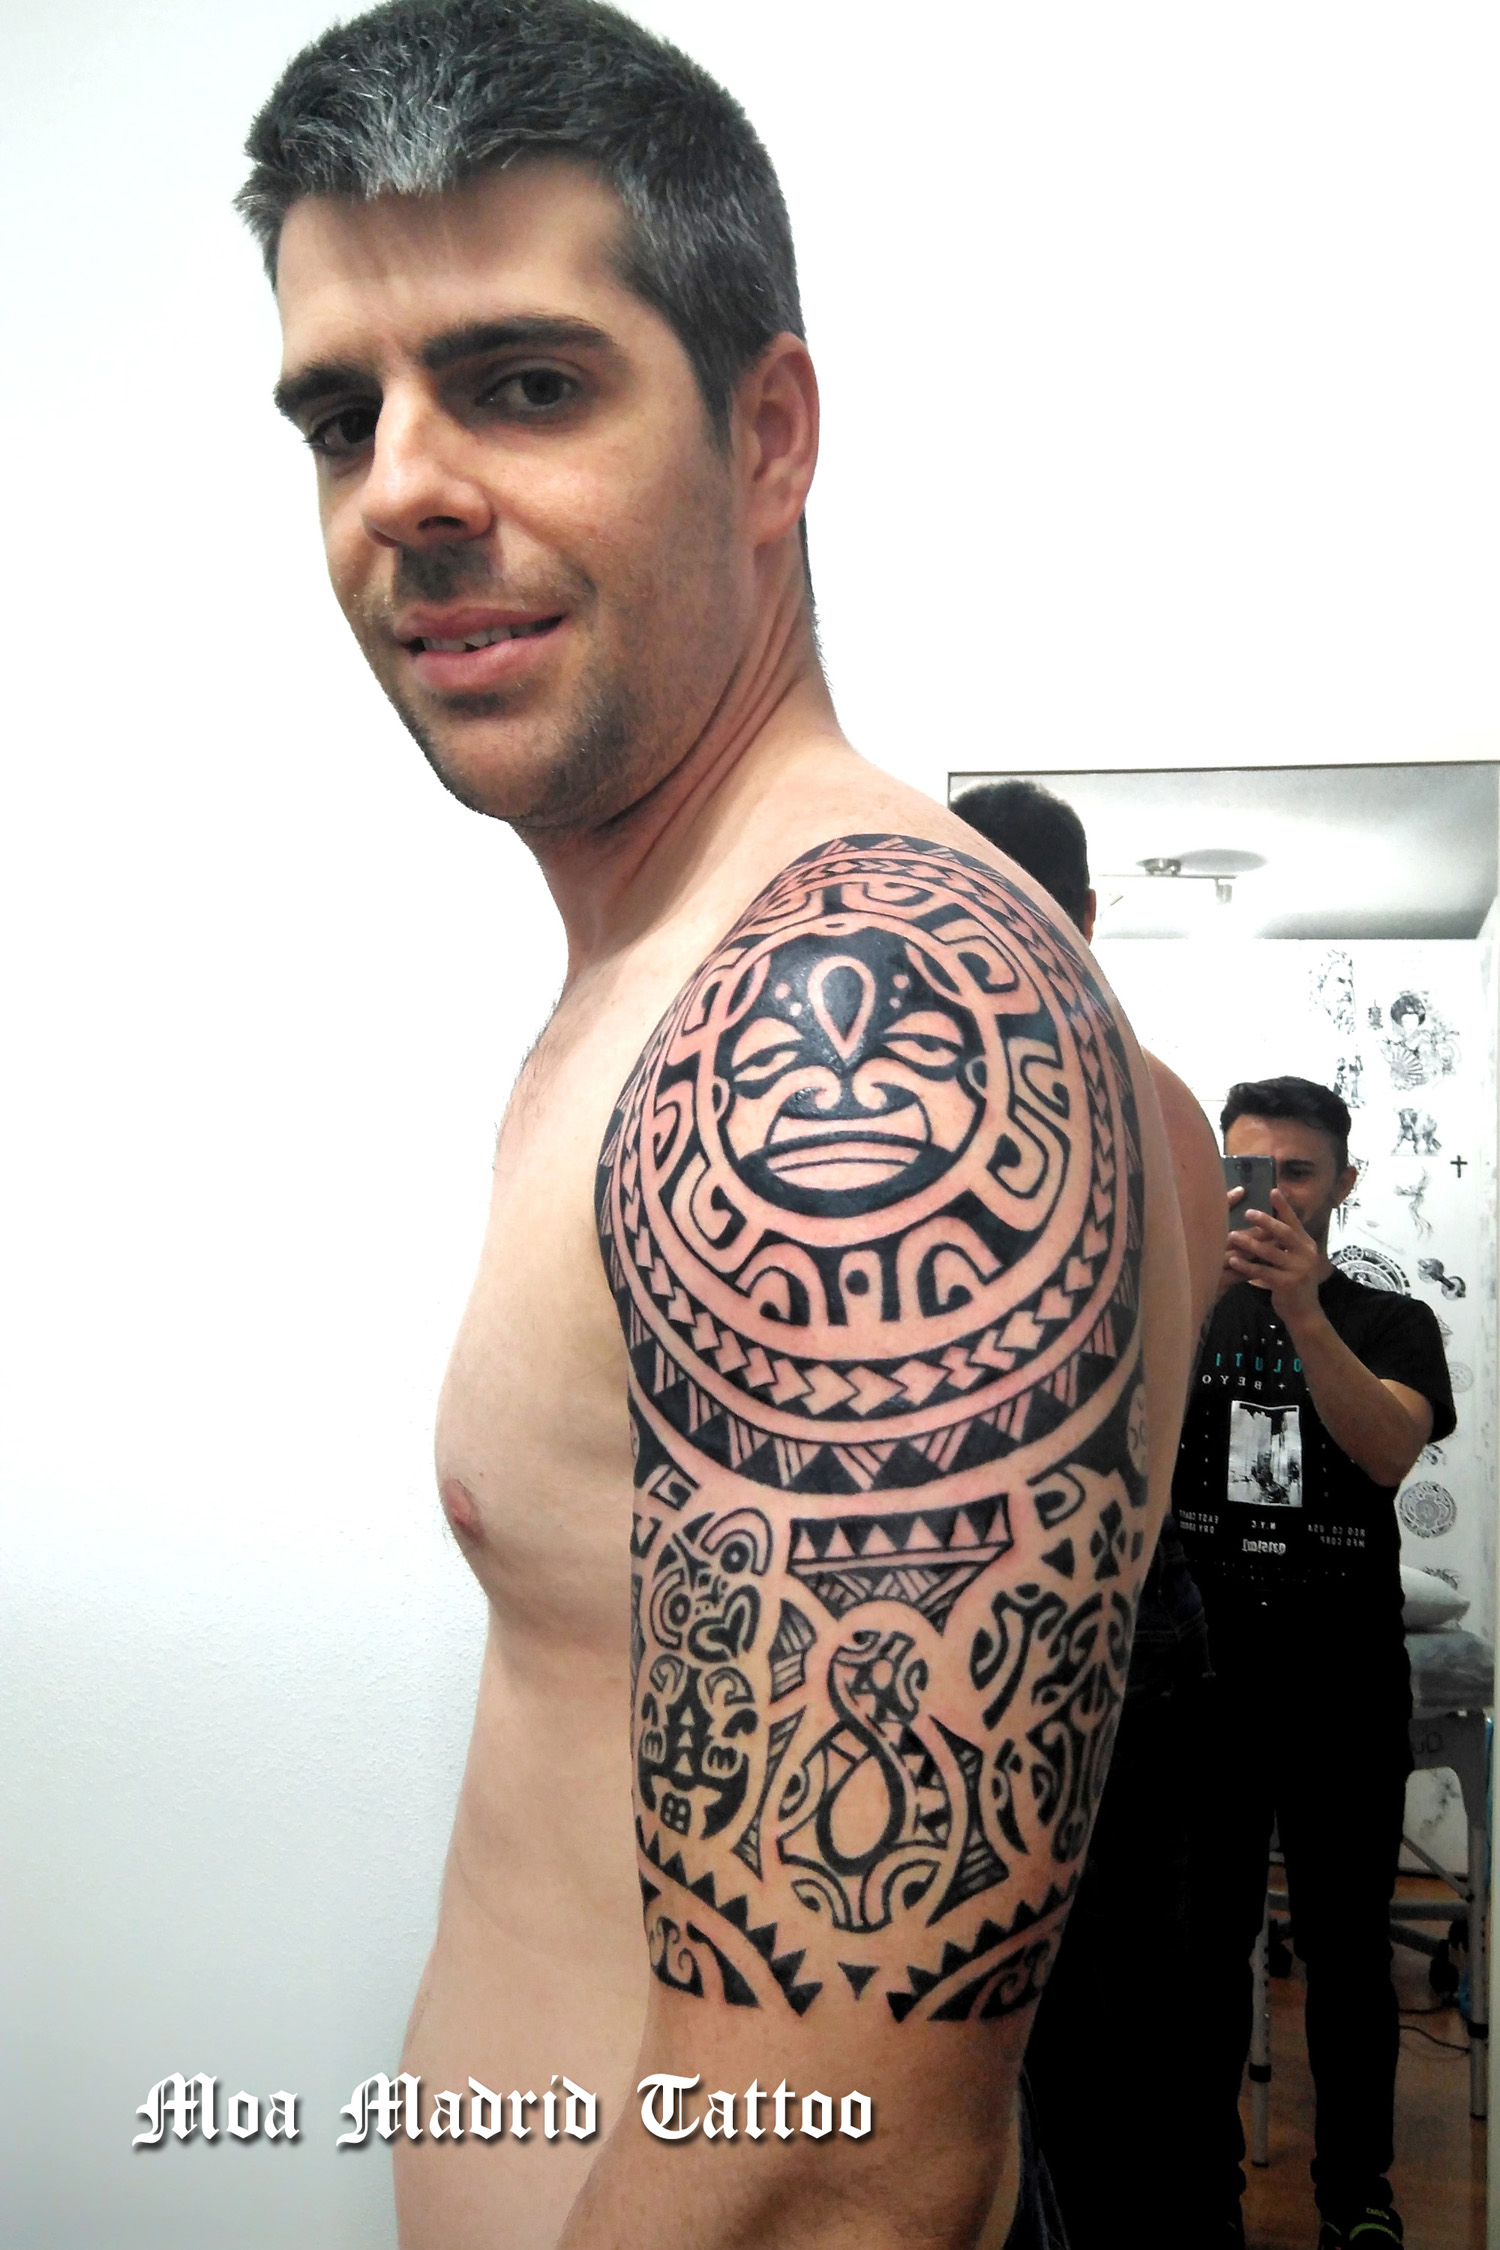 Diseño de tattoo maorí estructurada en dos mitades en las que se insertan todos los símbolos